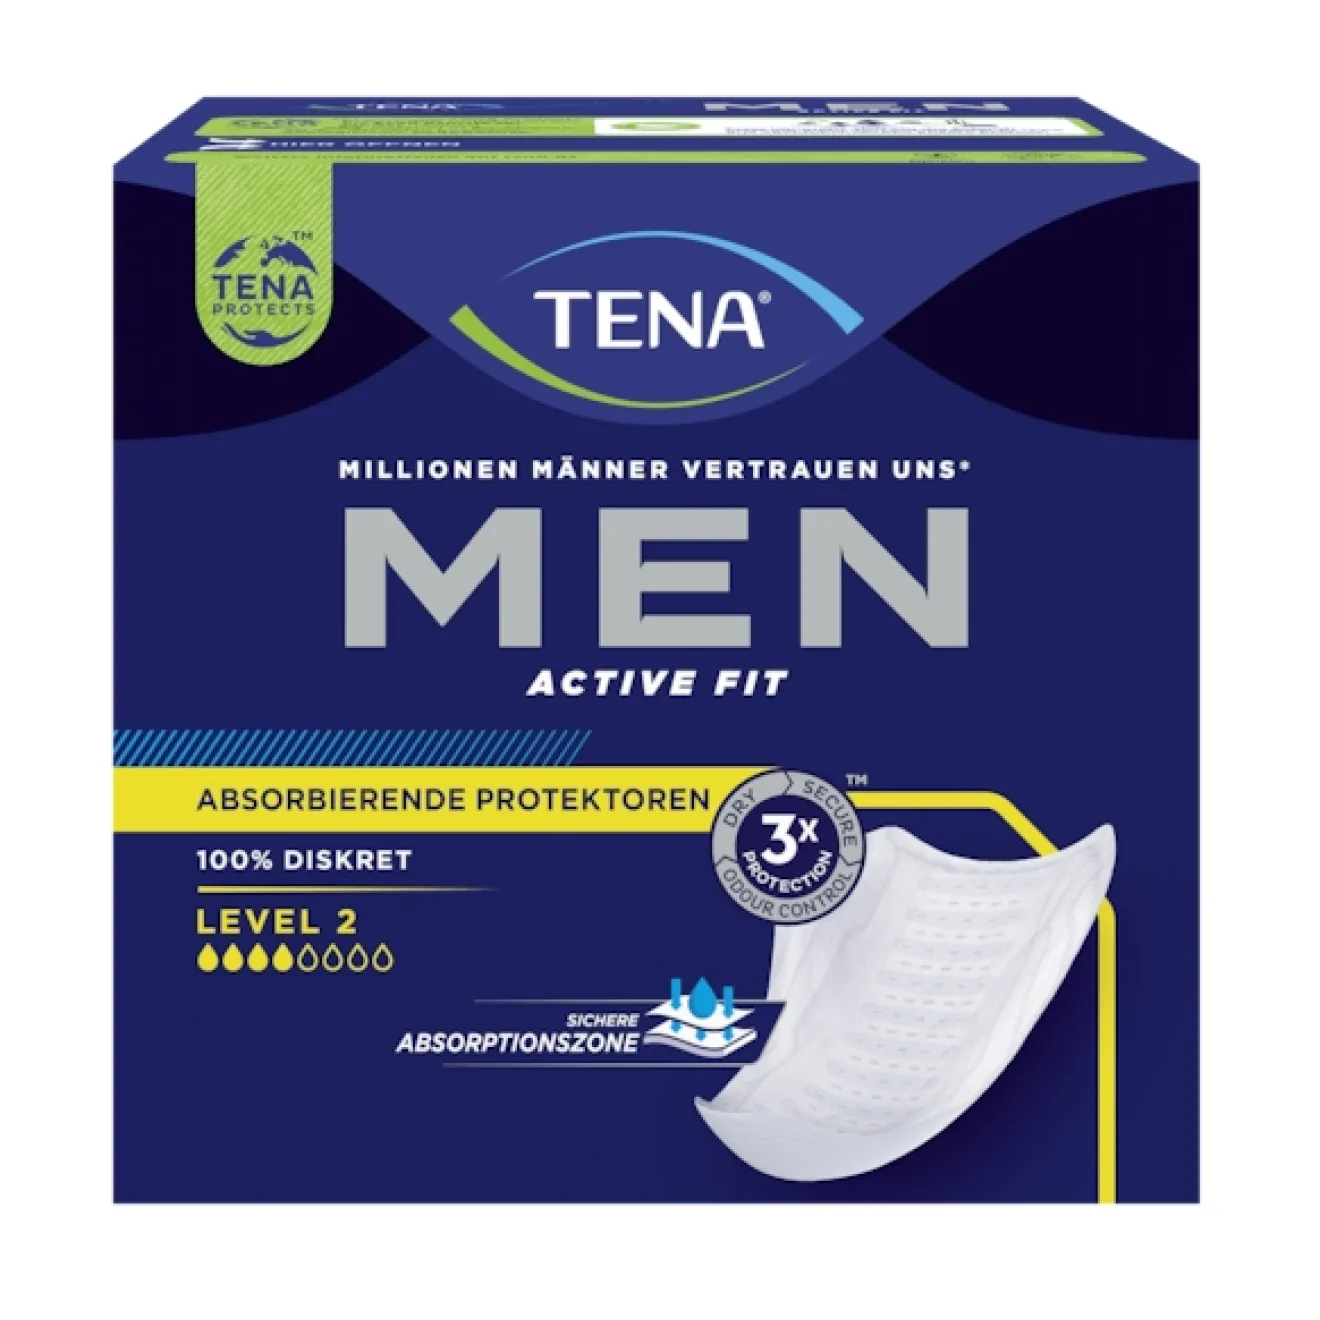 TENA MEN Active Fit Level 2 Inkontinenz Einlagen 6x20 ST